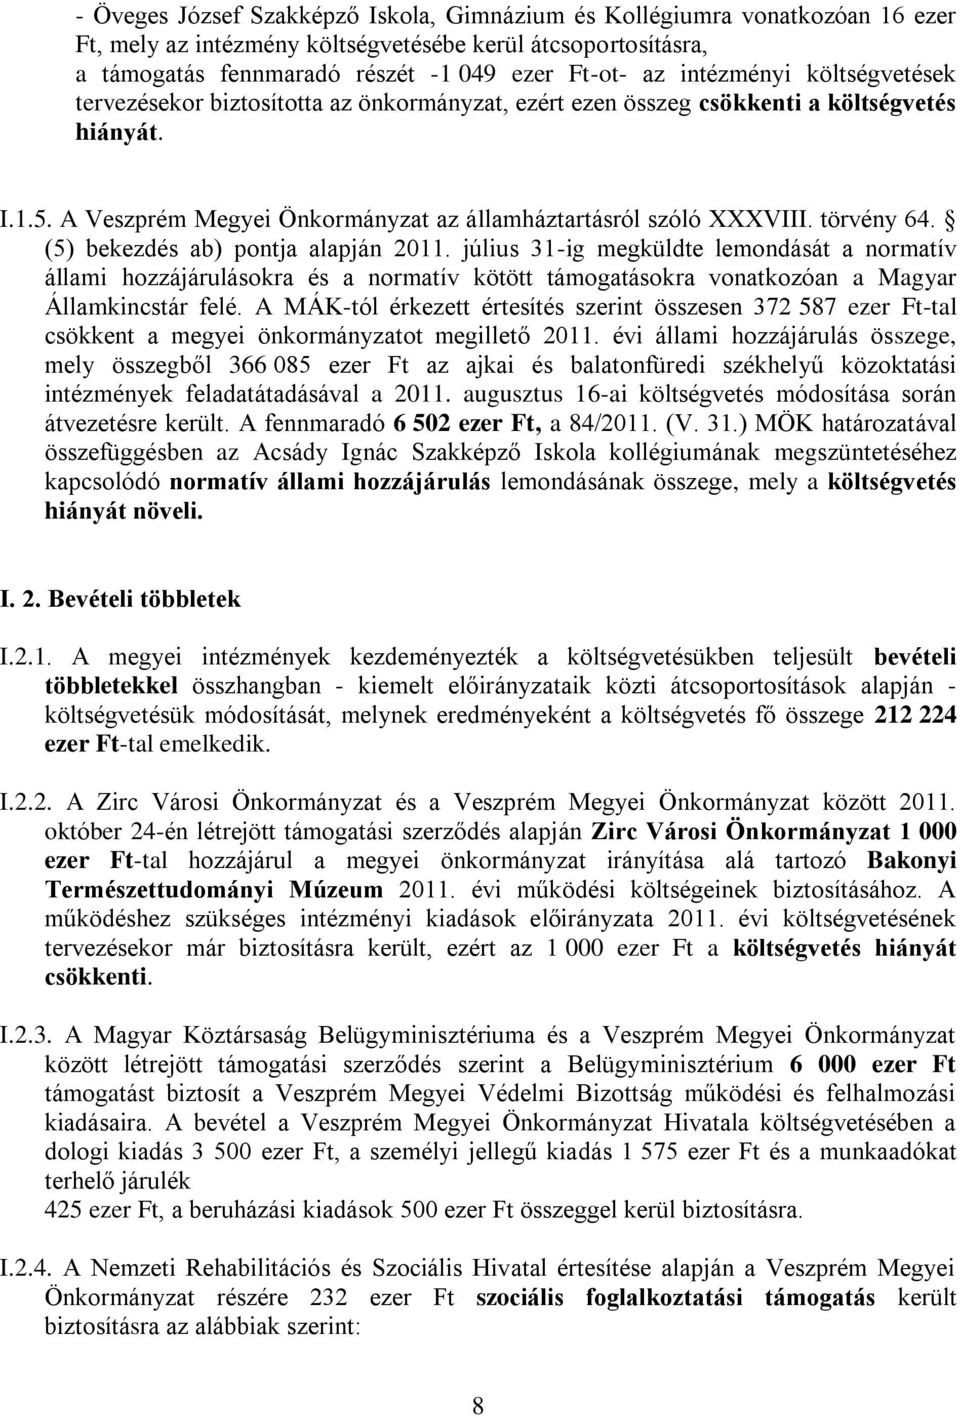 törvény 64. (5) bekezdés ab) pontja alapján 2011. július 31-ig megküldte lemondását a normatív állami hozzájárulásokra és a normatív kötött támogatásokra vonatkozóan a Magyar Államkincstár felé.